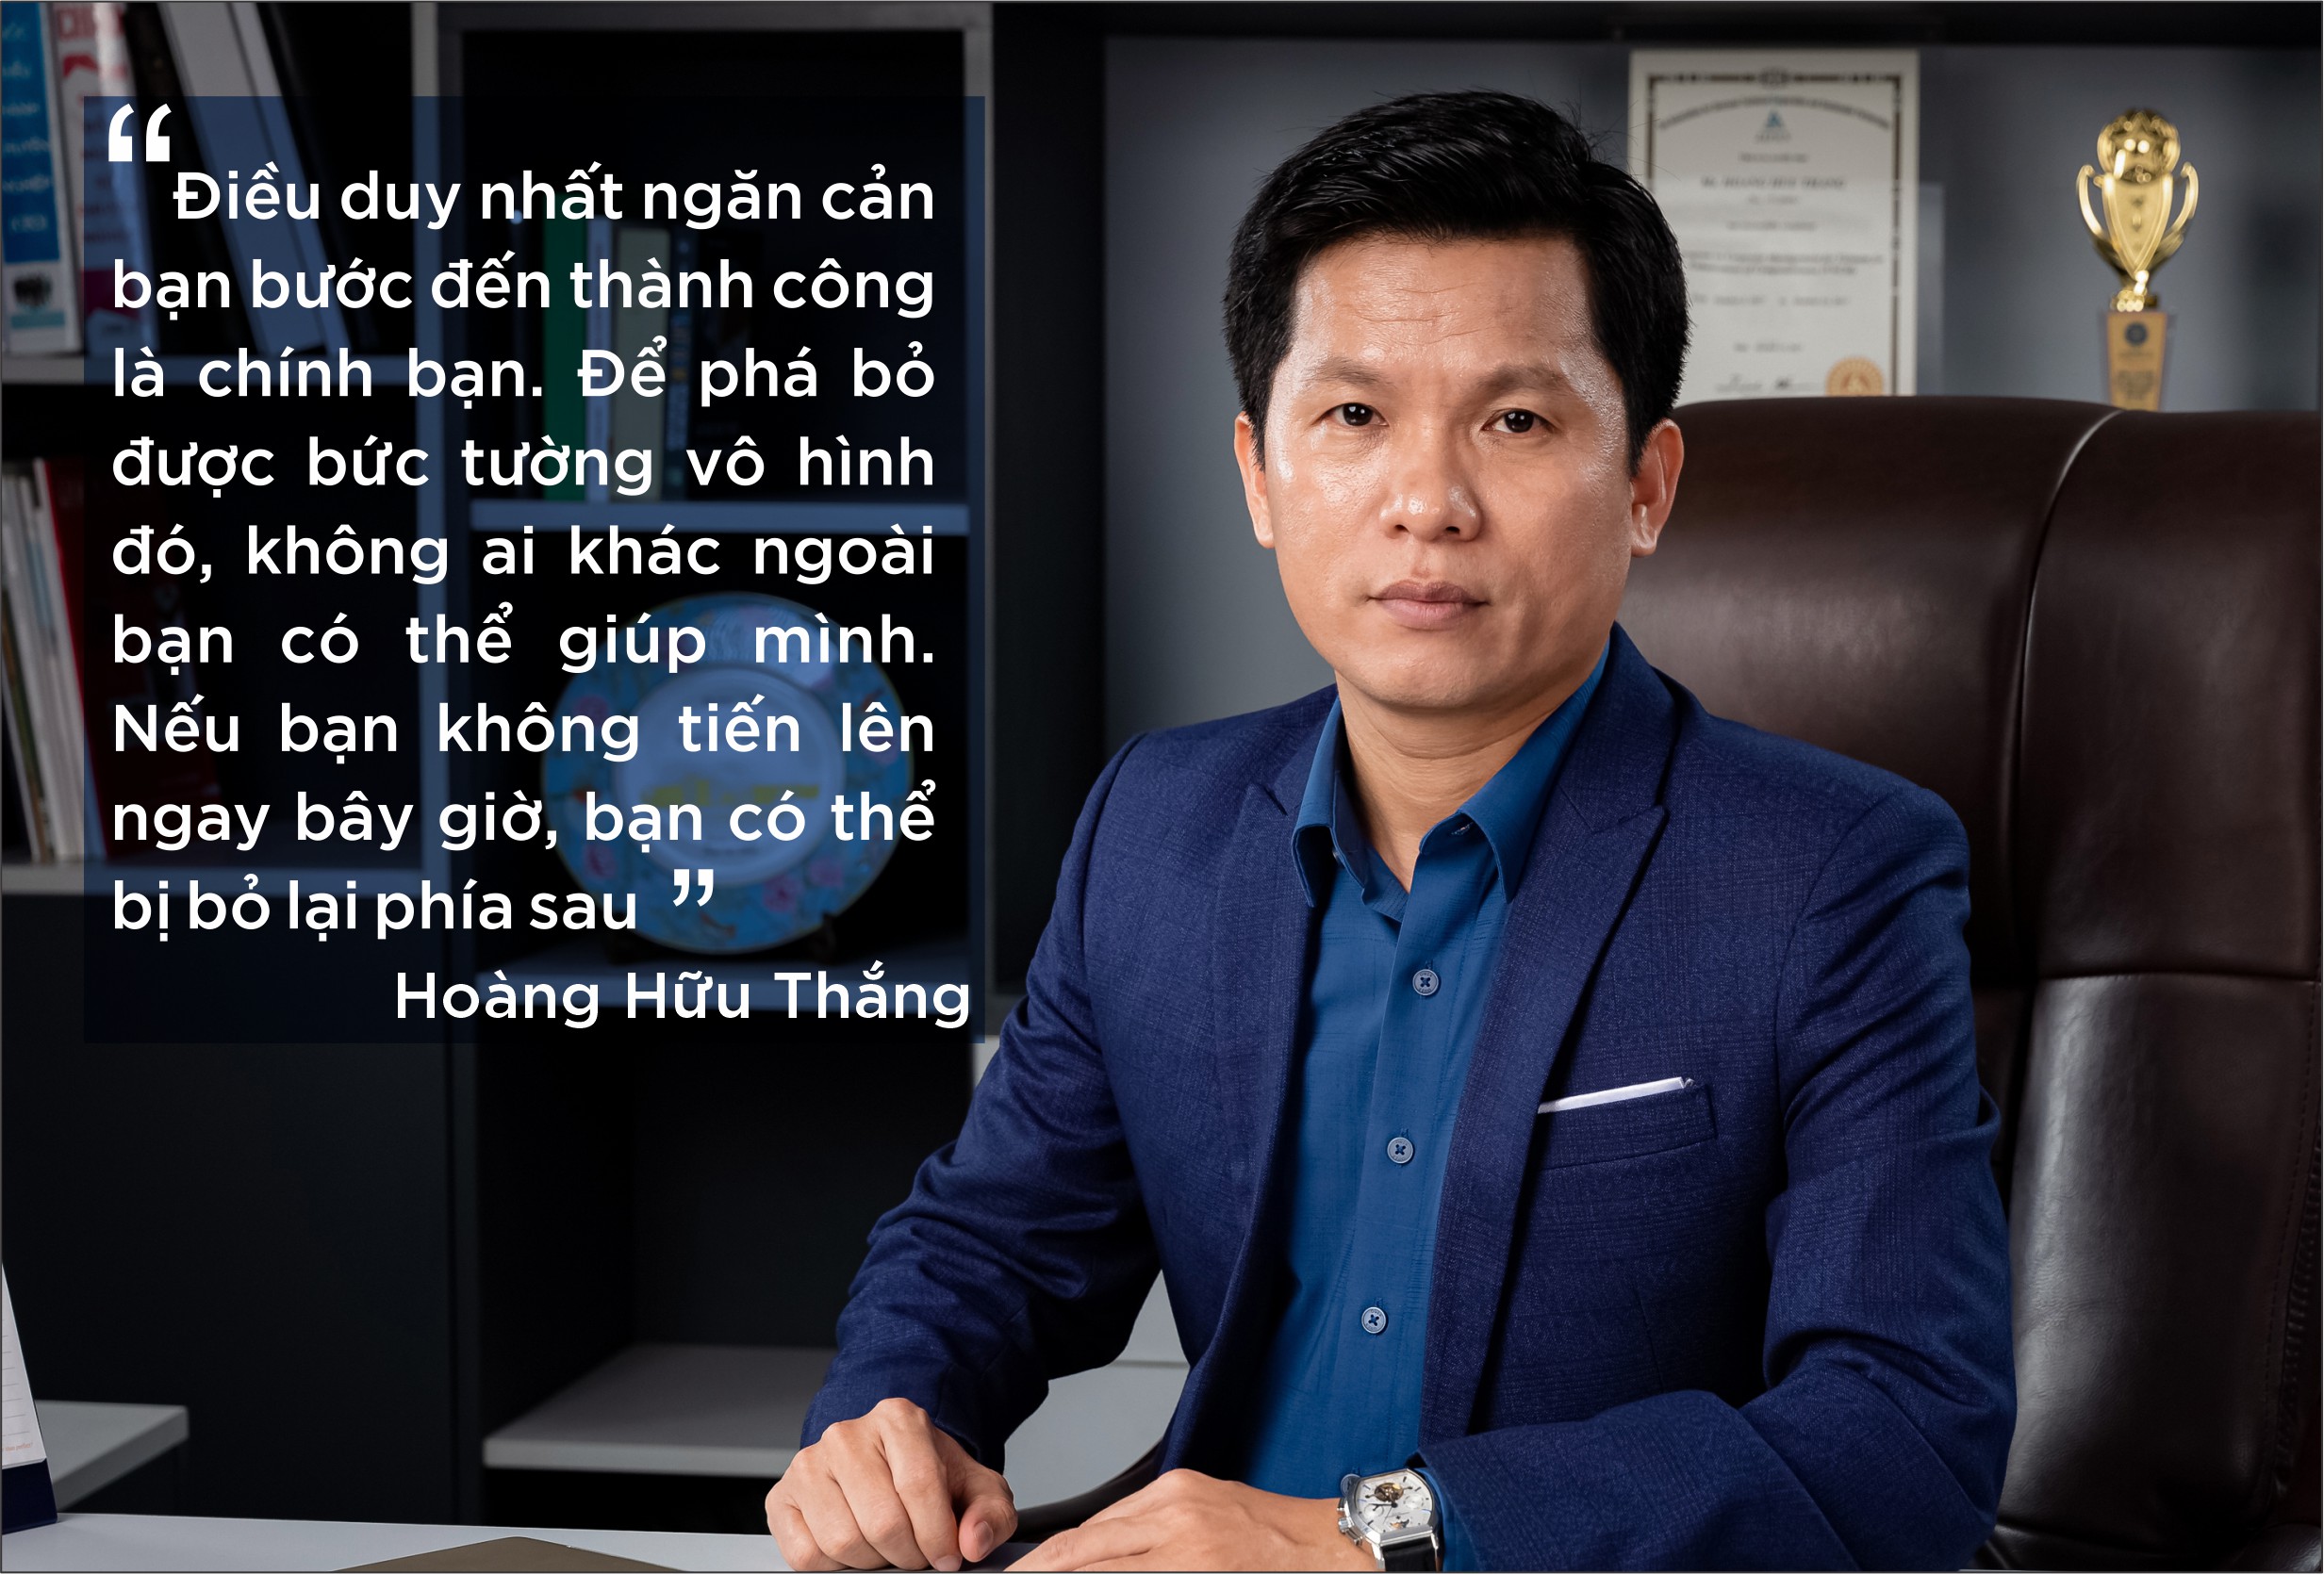 Ông Hoàng Hữu Thắng - Chủ tịch Tập đoàn Intech